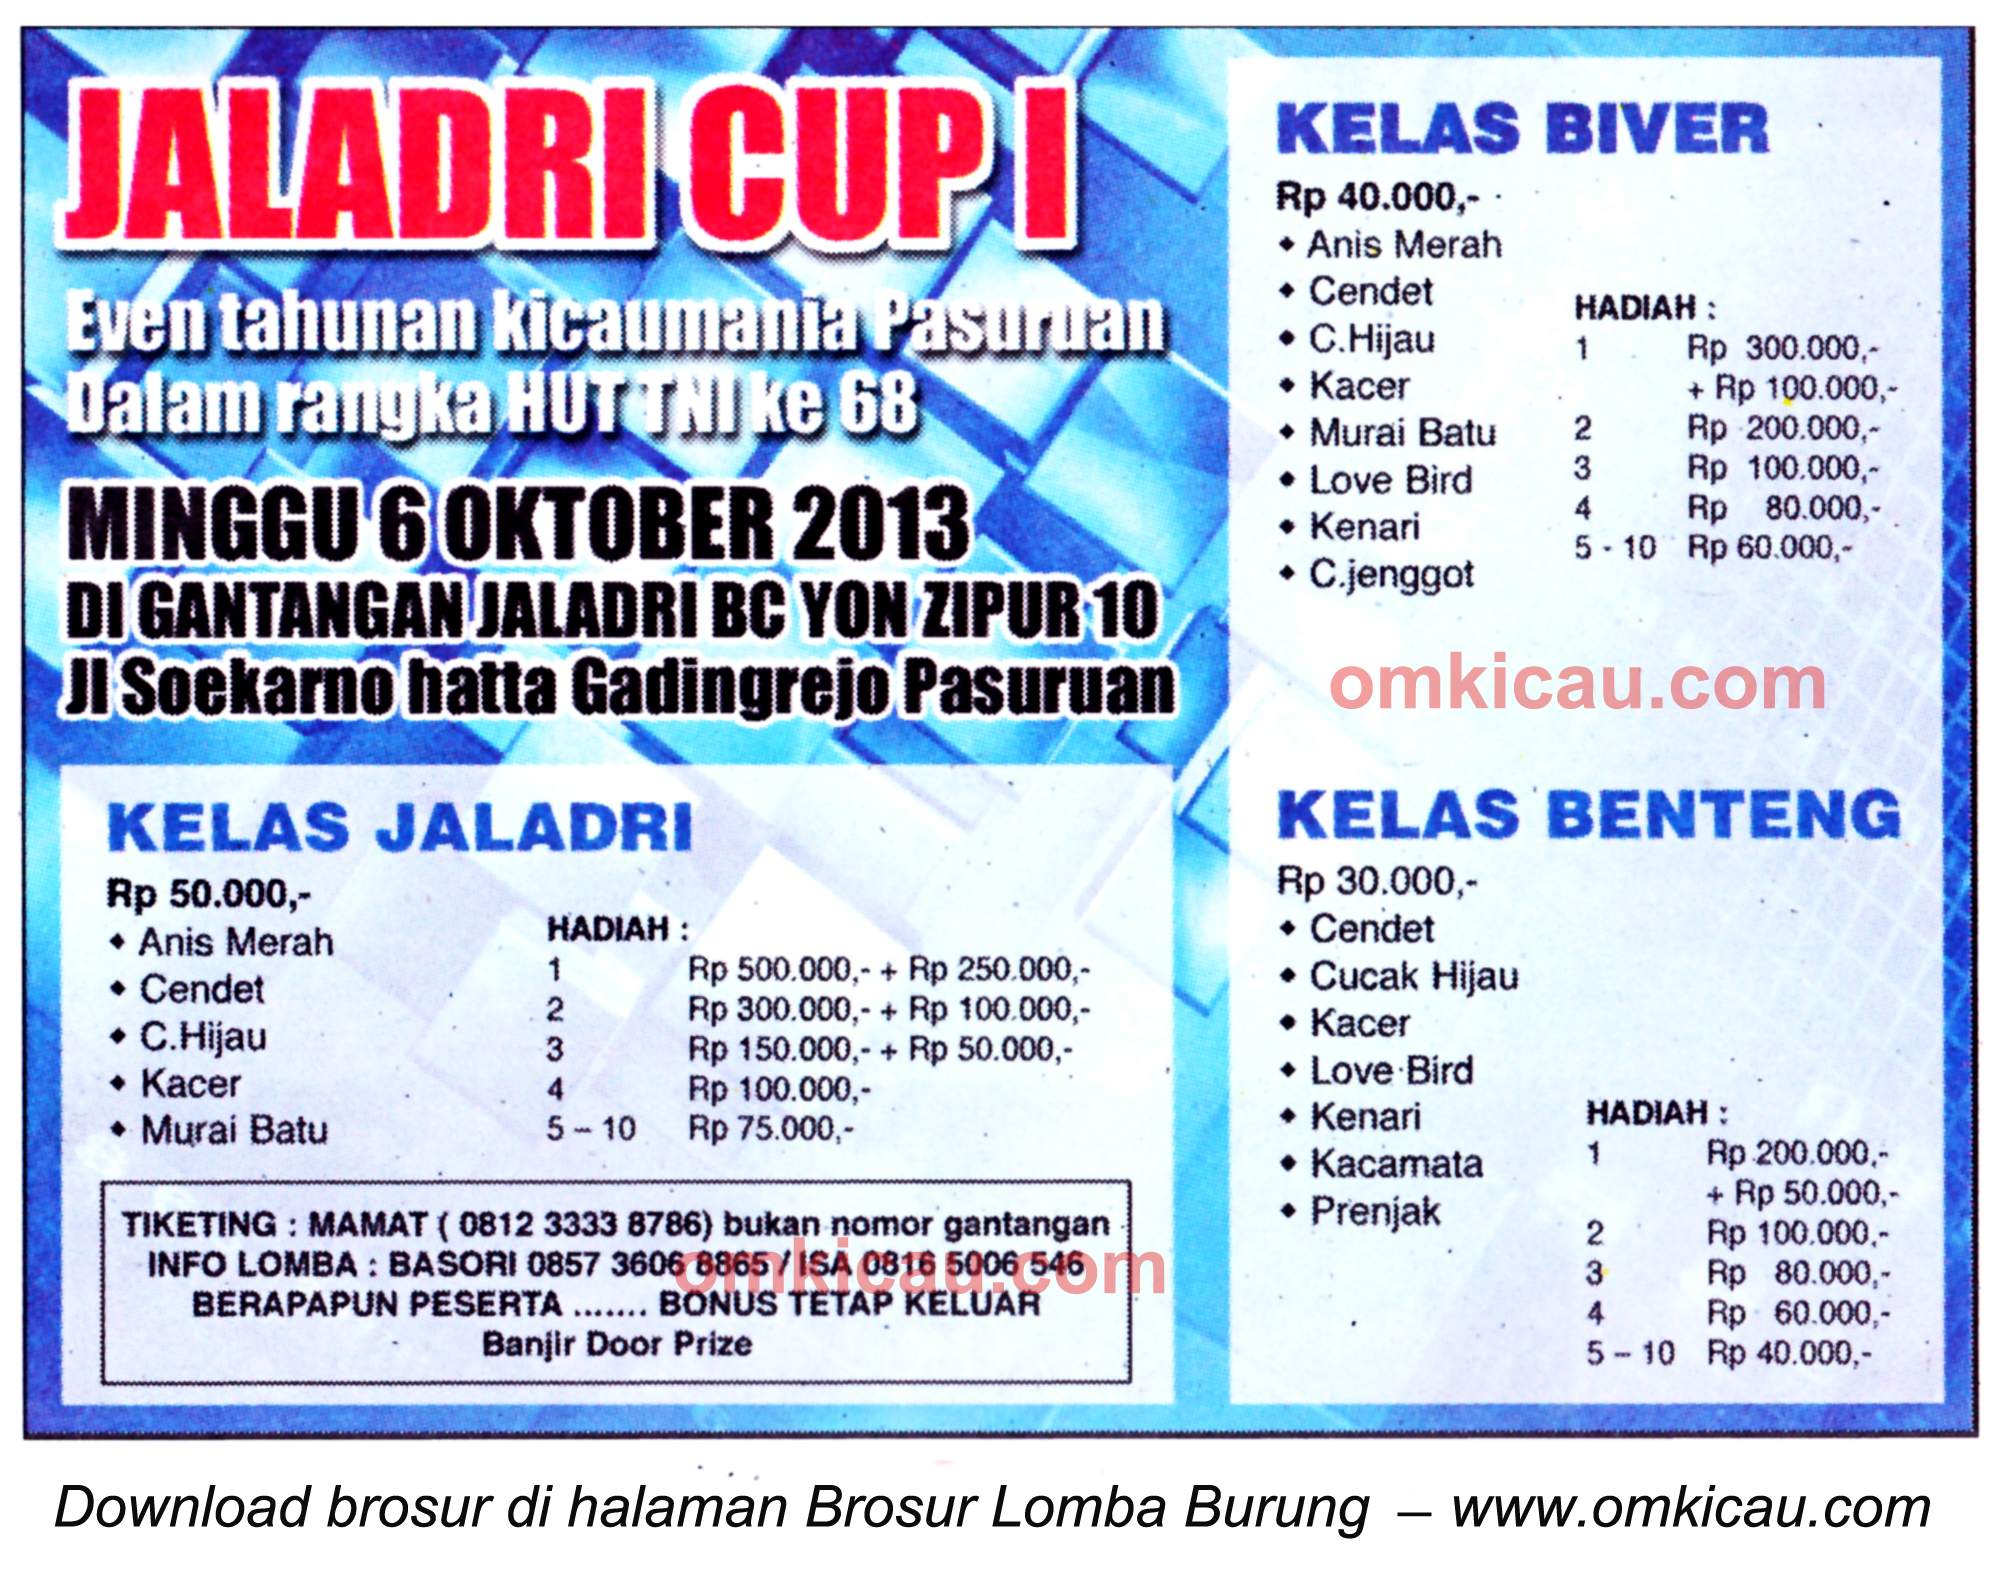 Brosur Lomba Burung Berkicau Jaladri Cup, Pasuruan, 6 Oktober 2013